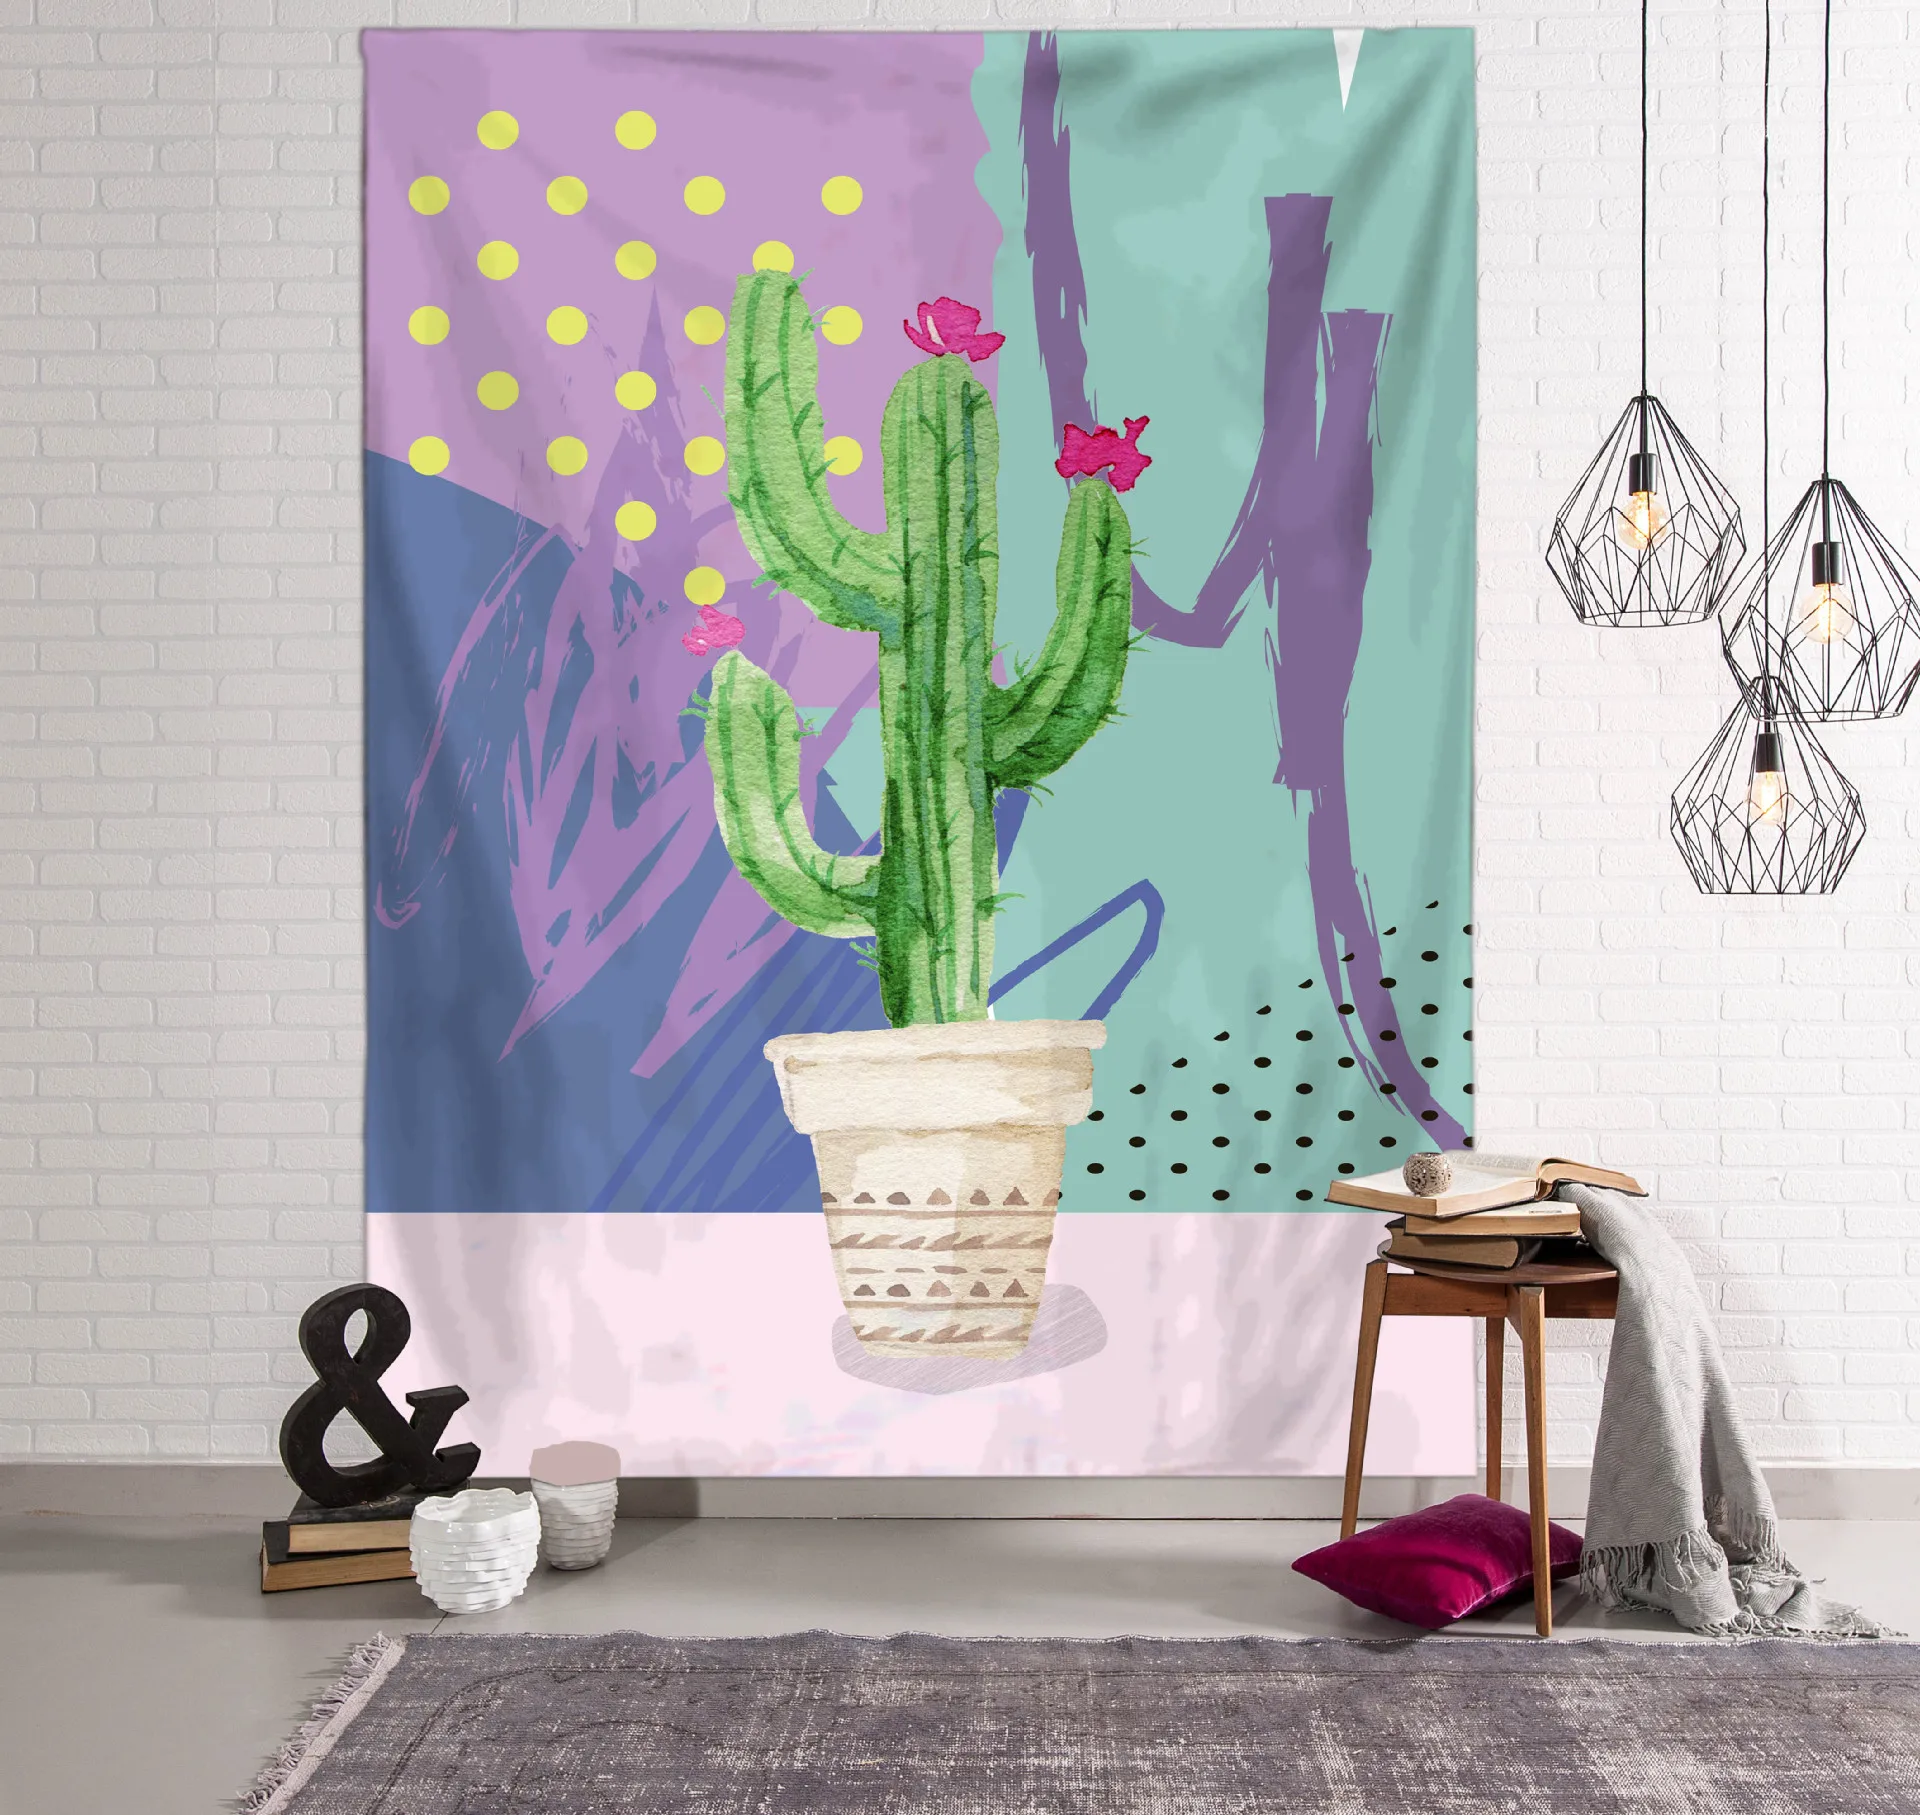 Настенный гобелен с принтом кактуса и растений, мандала, богемский гобелен, пейзаж, обои, настенная шаль